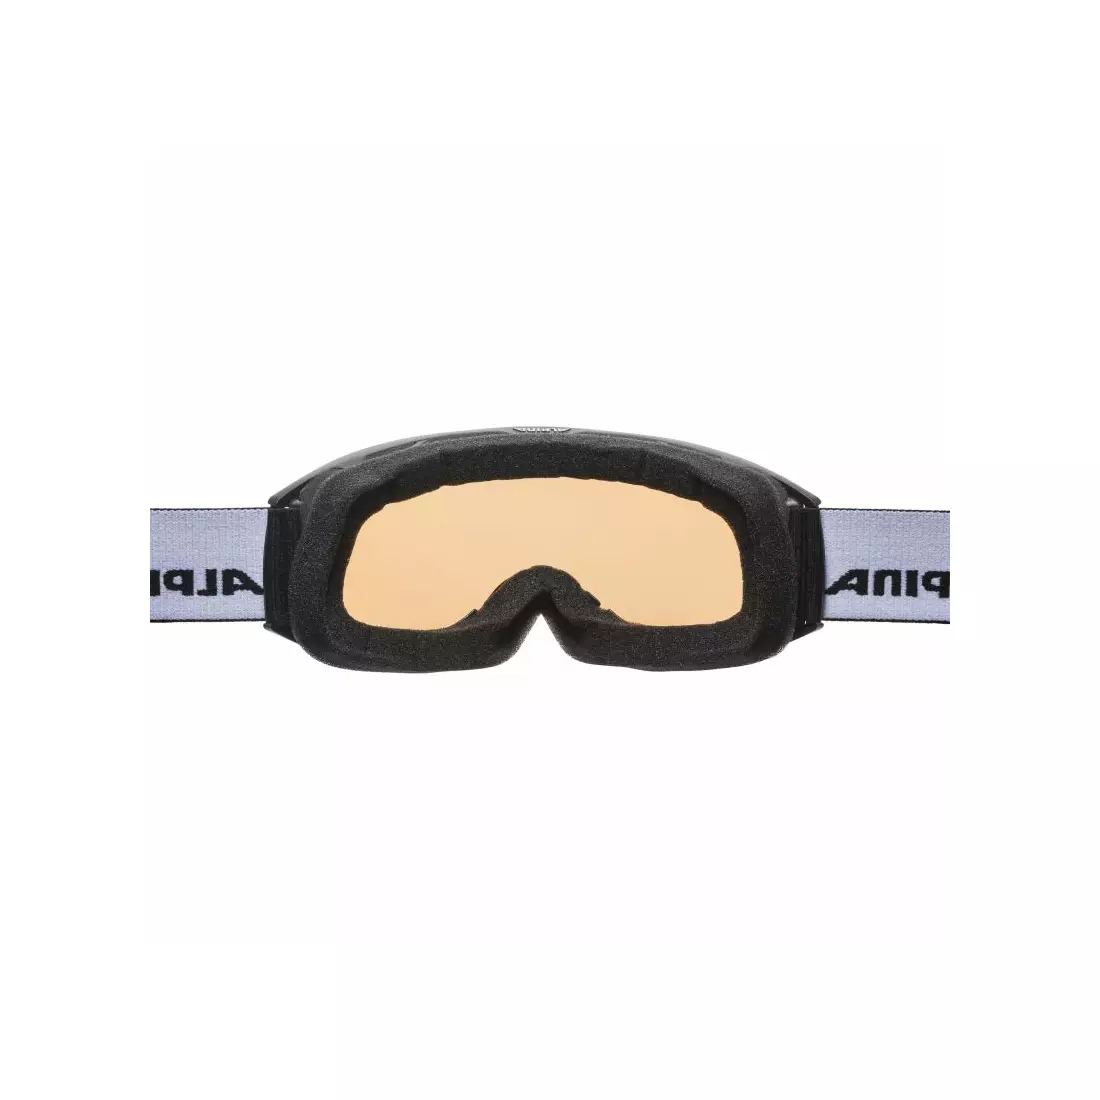 ALPINA ochelari de schi / snowboard M40 NAKISKA HM black A7280831